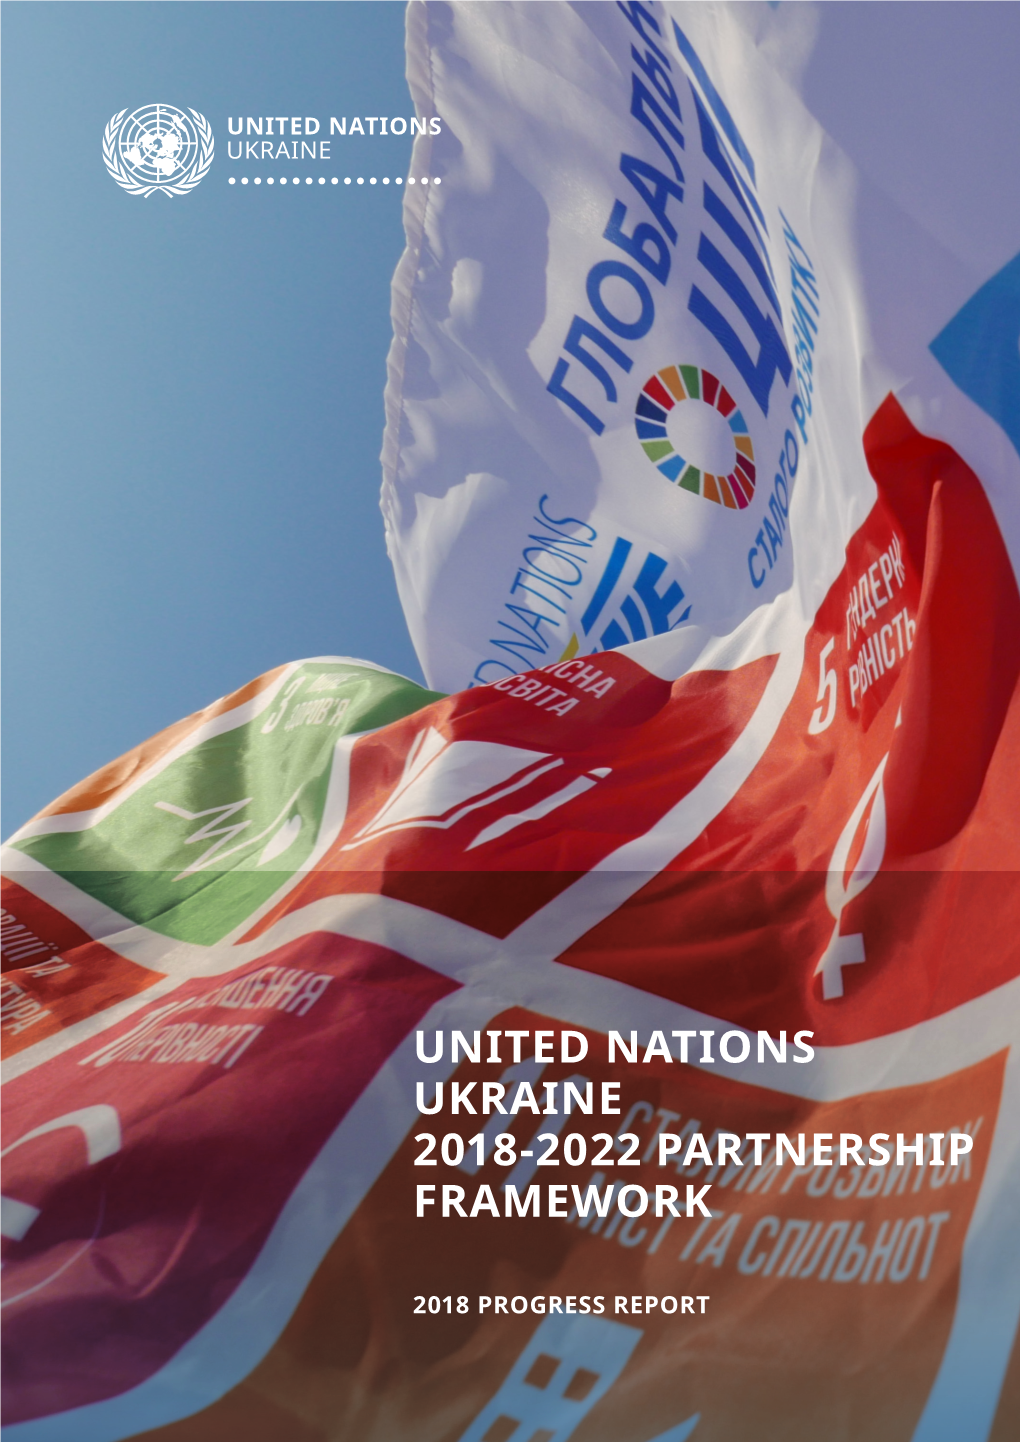 United Nations Ukraine 2018-2022 Partnership Framework